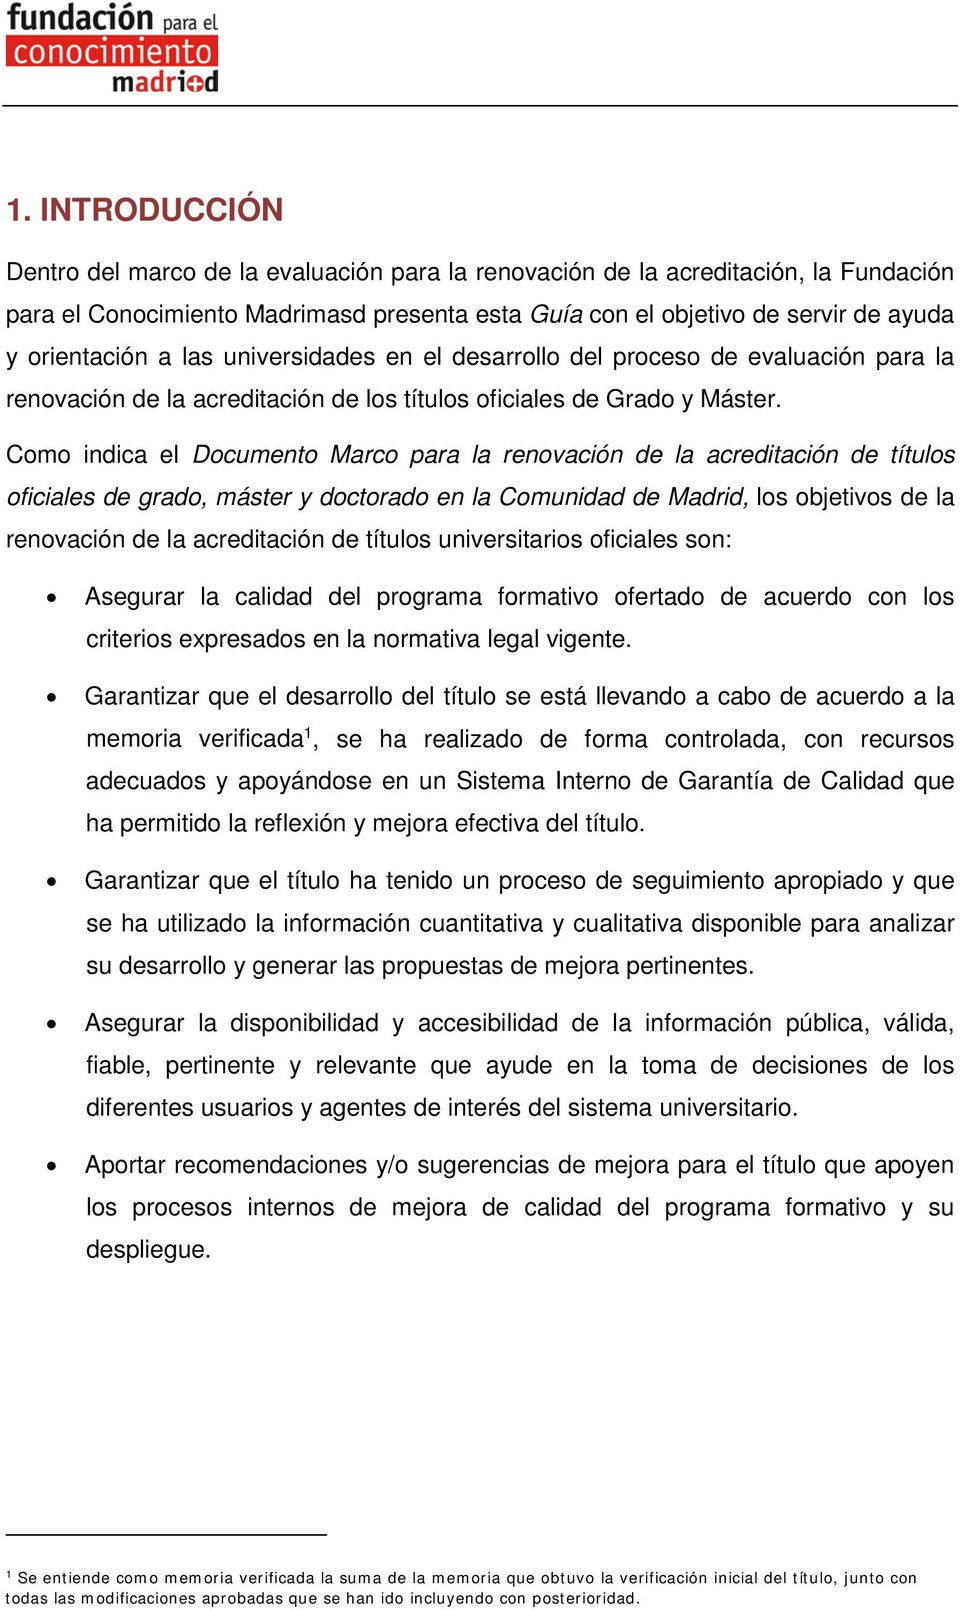 Como indica el Documento Marco para la renovación de la acreditación de títulos oficiales de grado, máster y doctorado en la Comunidad de Madrid, los objetivos de la renovación de la acreditación de